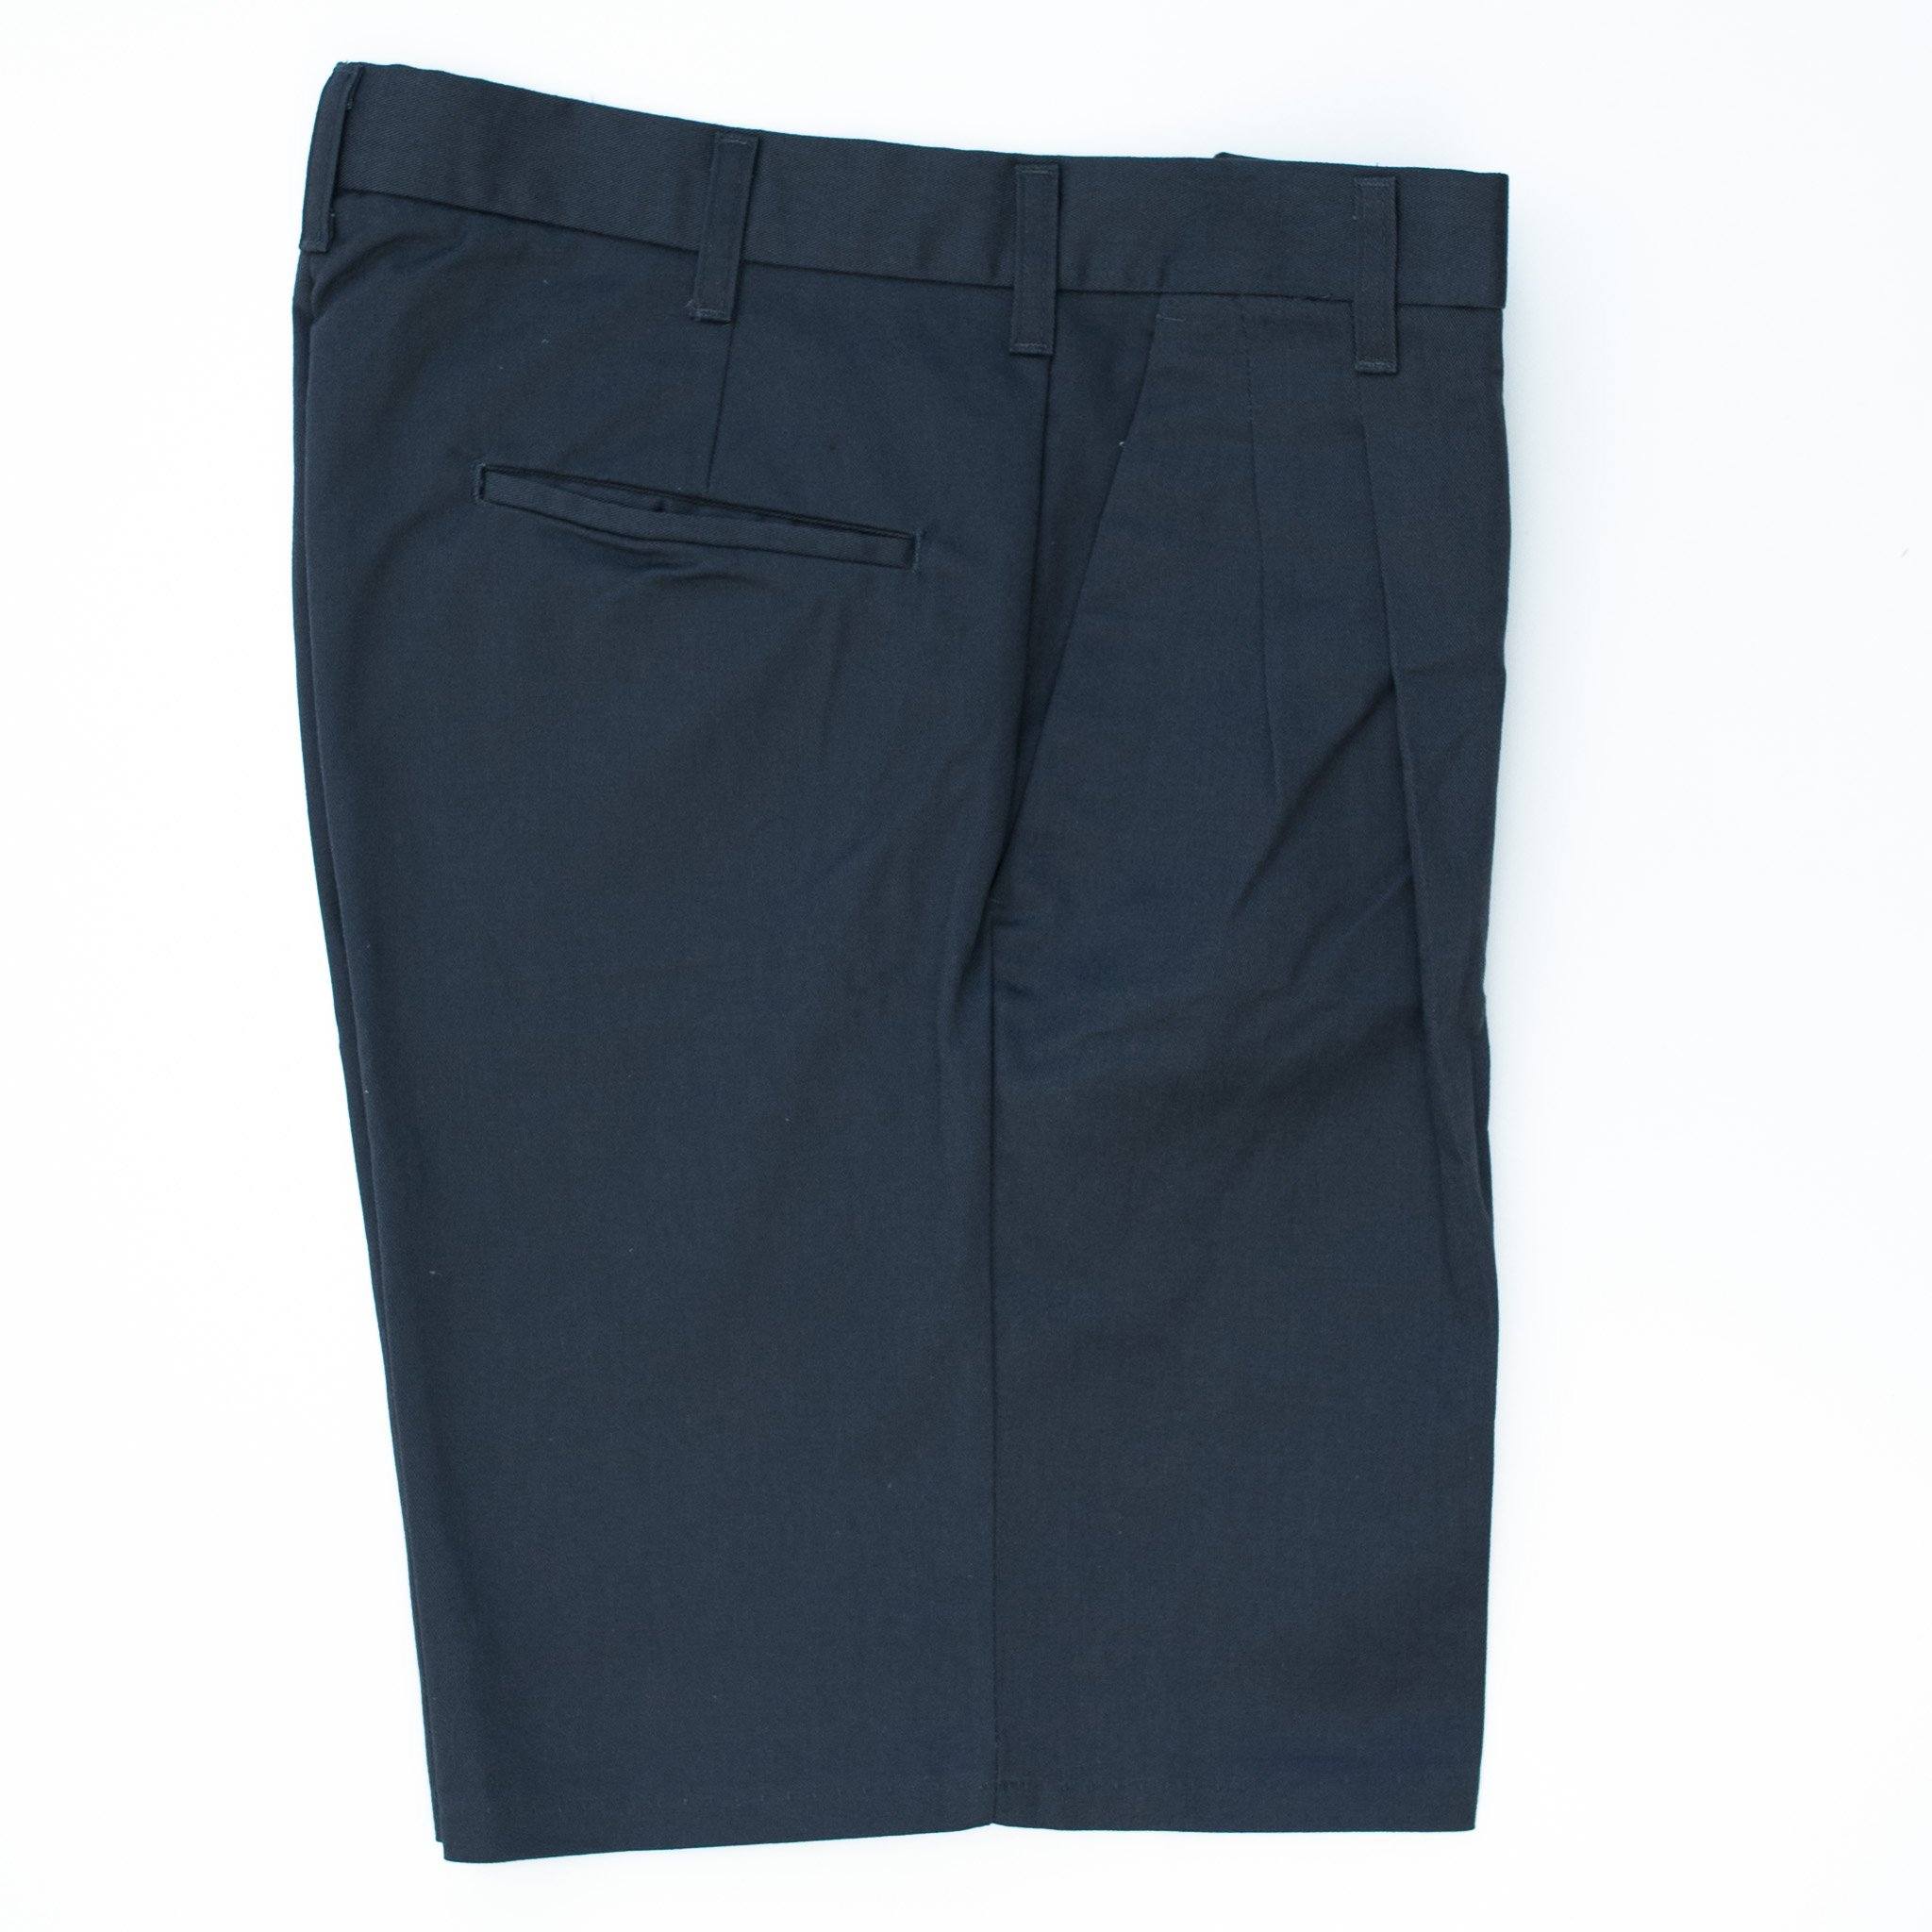 Used Work Shorts - Uniform Shorts - Workwear Shorts | Walt's – Walt's ...